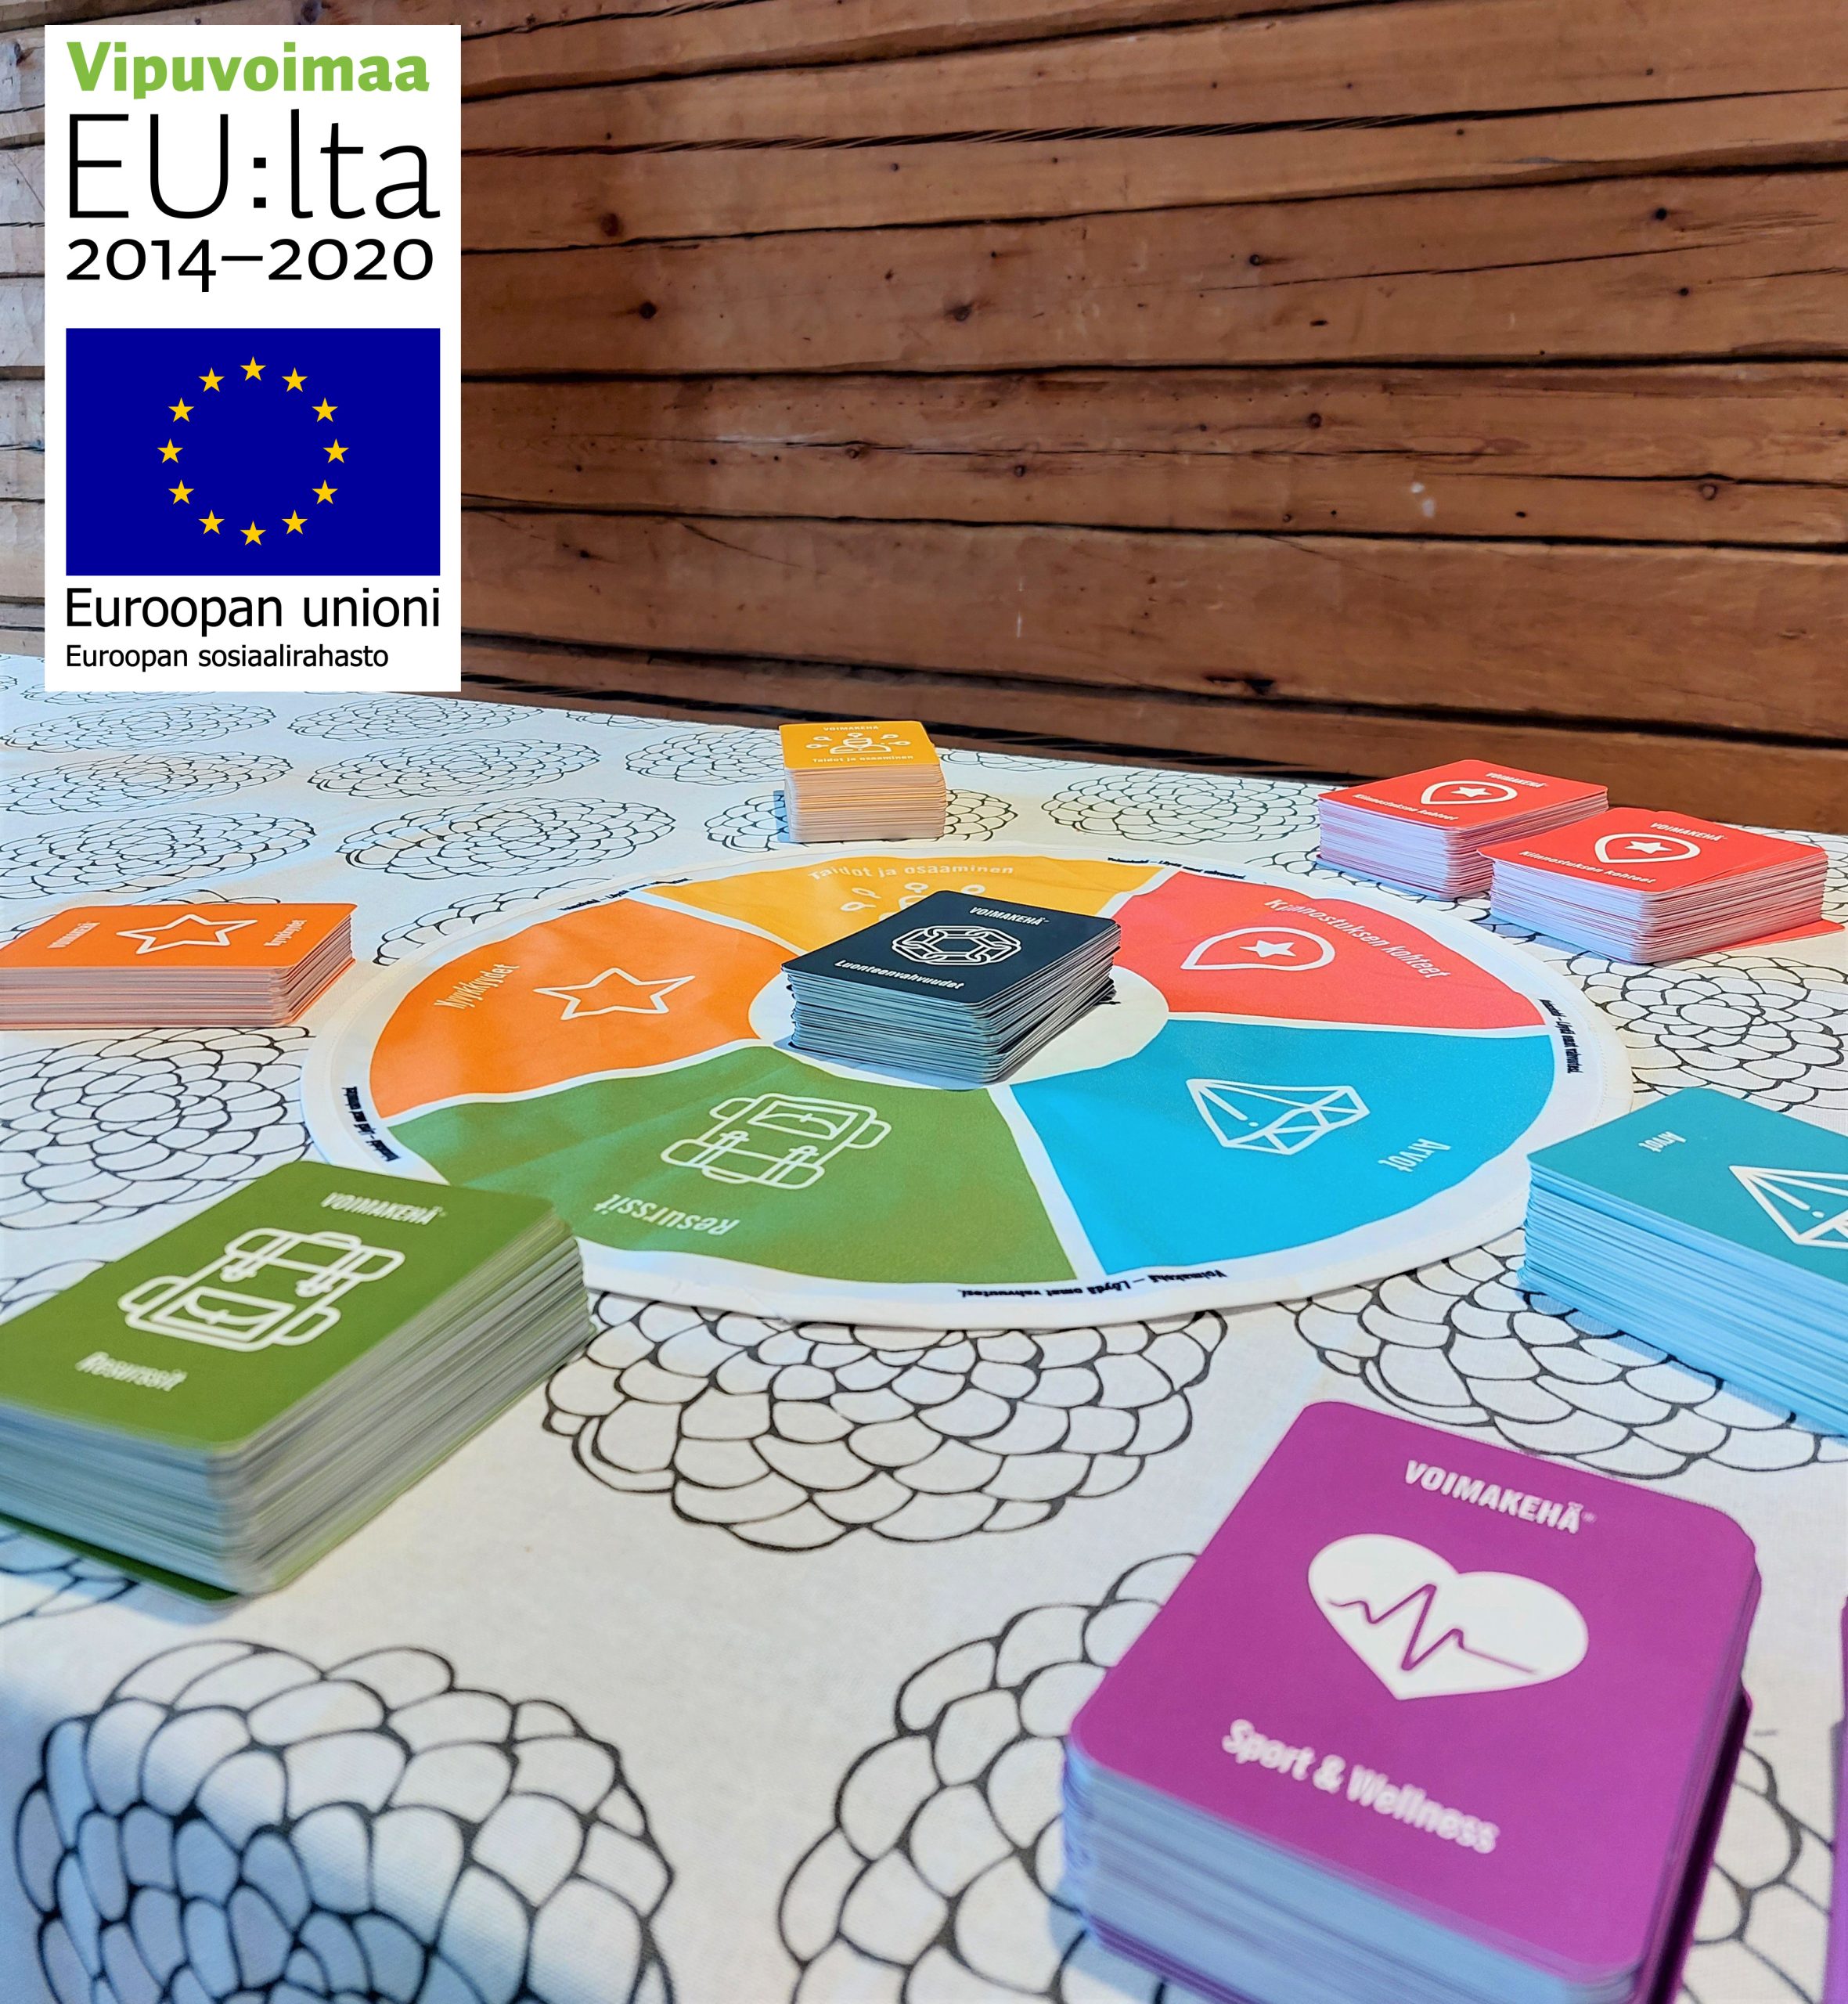 Kuva voimakehä-laudasta ja korteista sekä Vipuvoimaa EU:lta että ESR-logot